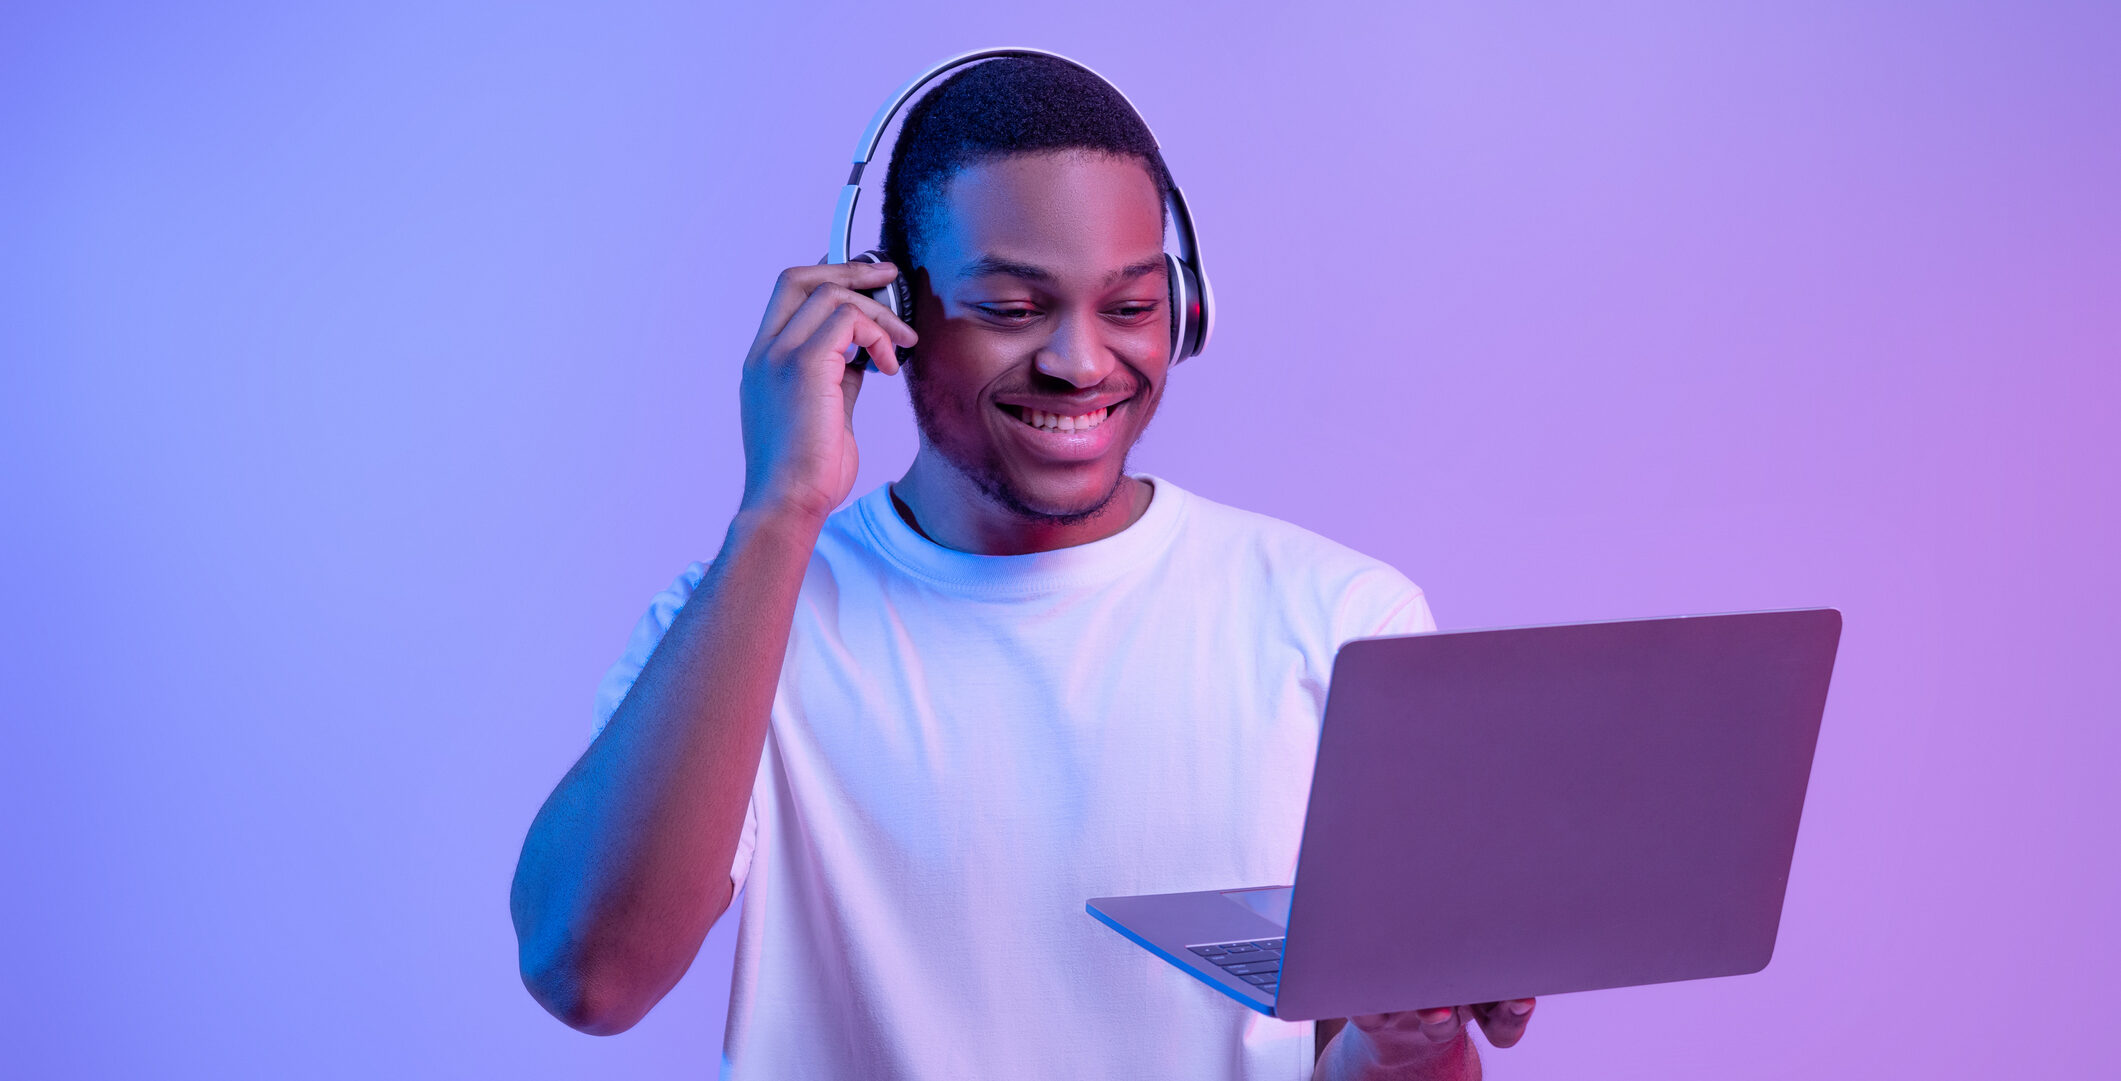 Black Gamer Man In Headset Playing Video Games On Laptop, Neon Lighting